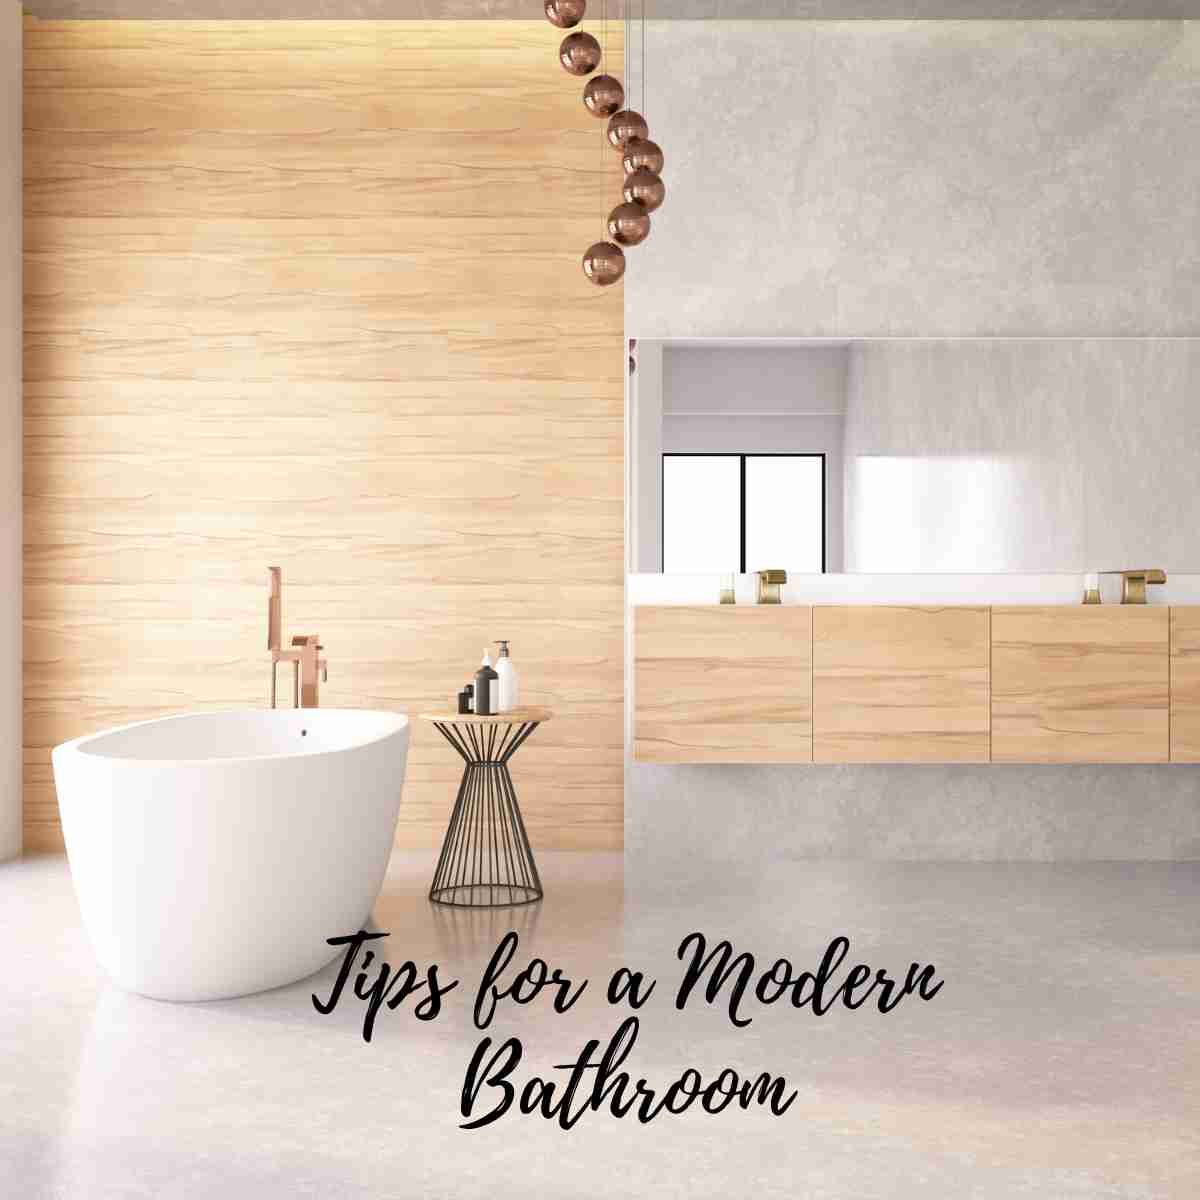 Tips for a Modern Bathroom